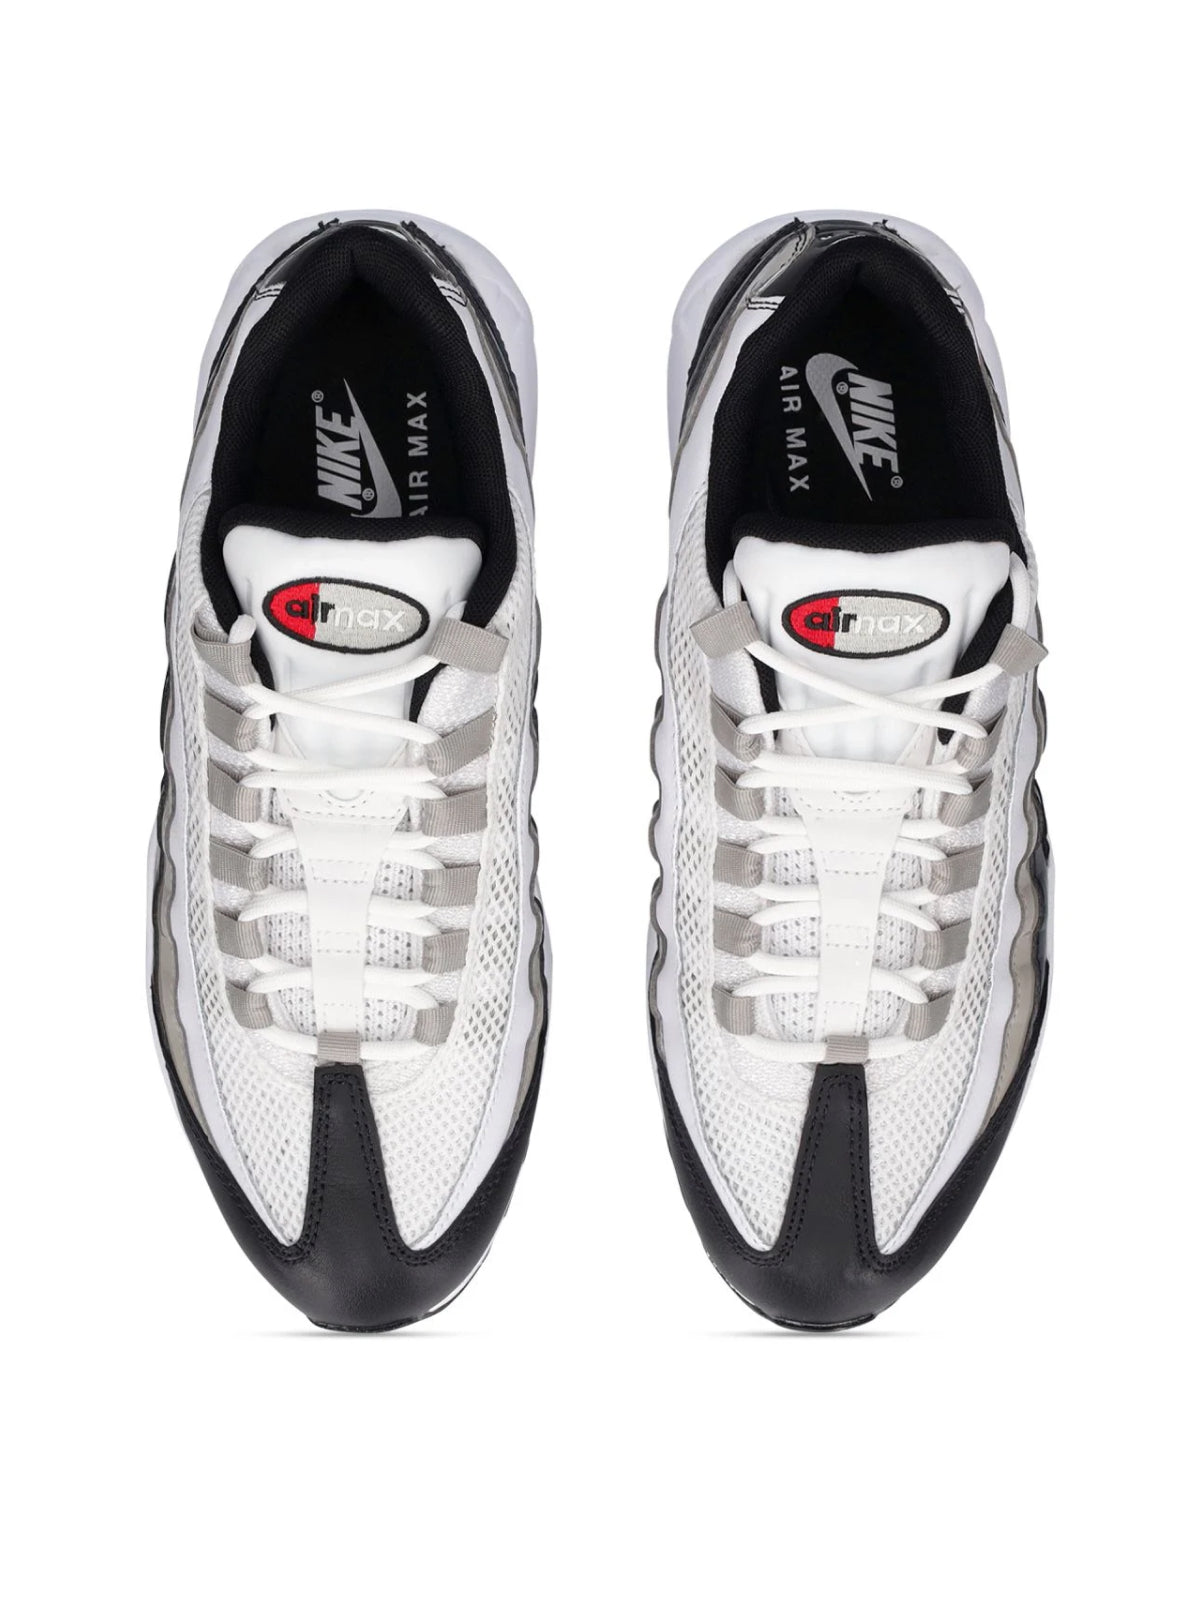 Air Max 95 Sneakers